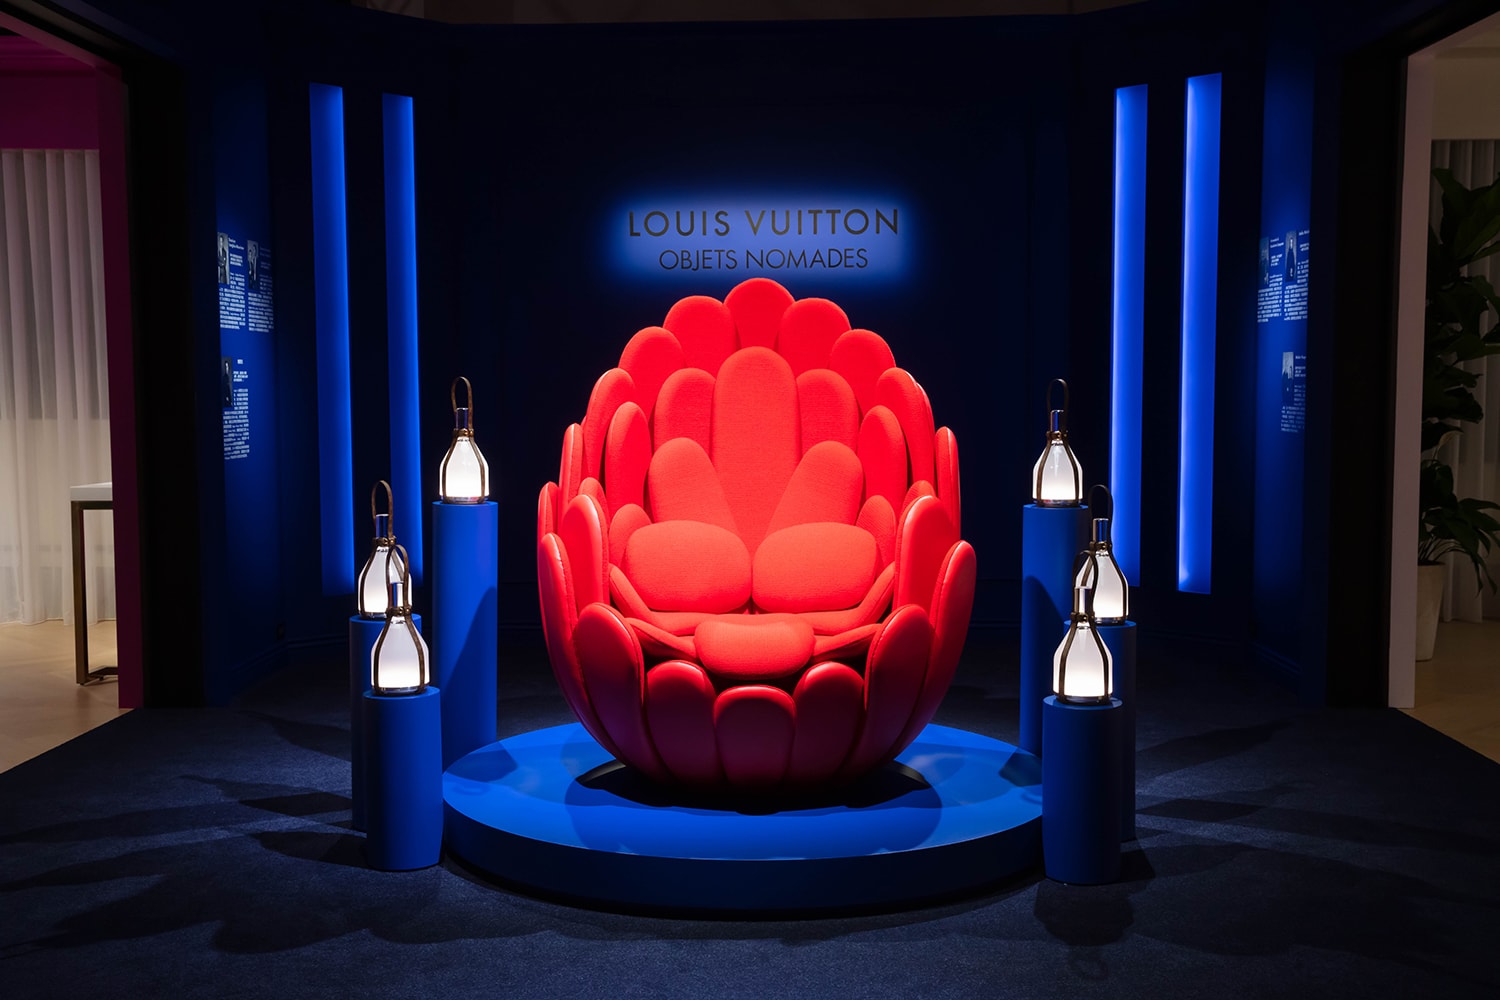 率先走進 Louis Vuitton 全新 Objets Nomades 家具展覽活動